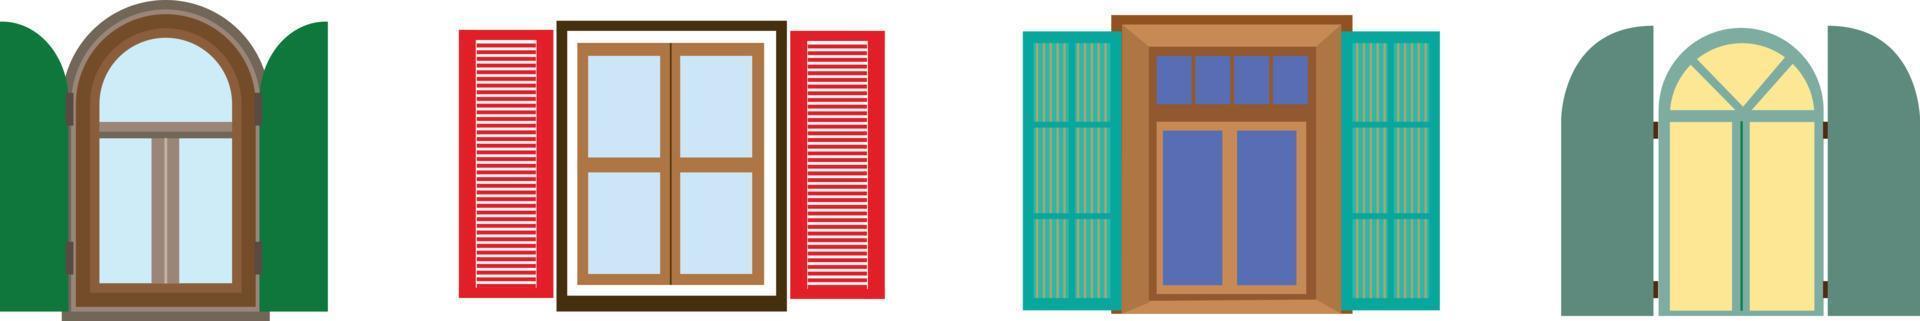 conjunto de varias ventanas coloridas detalladas con alféizares, cortinas, flores, balcones. eps de ilustración de vector de estilo plano